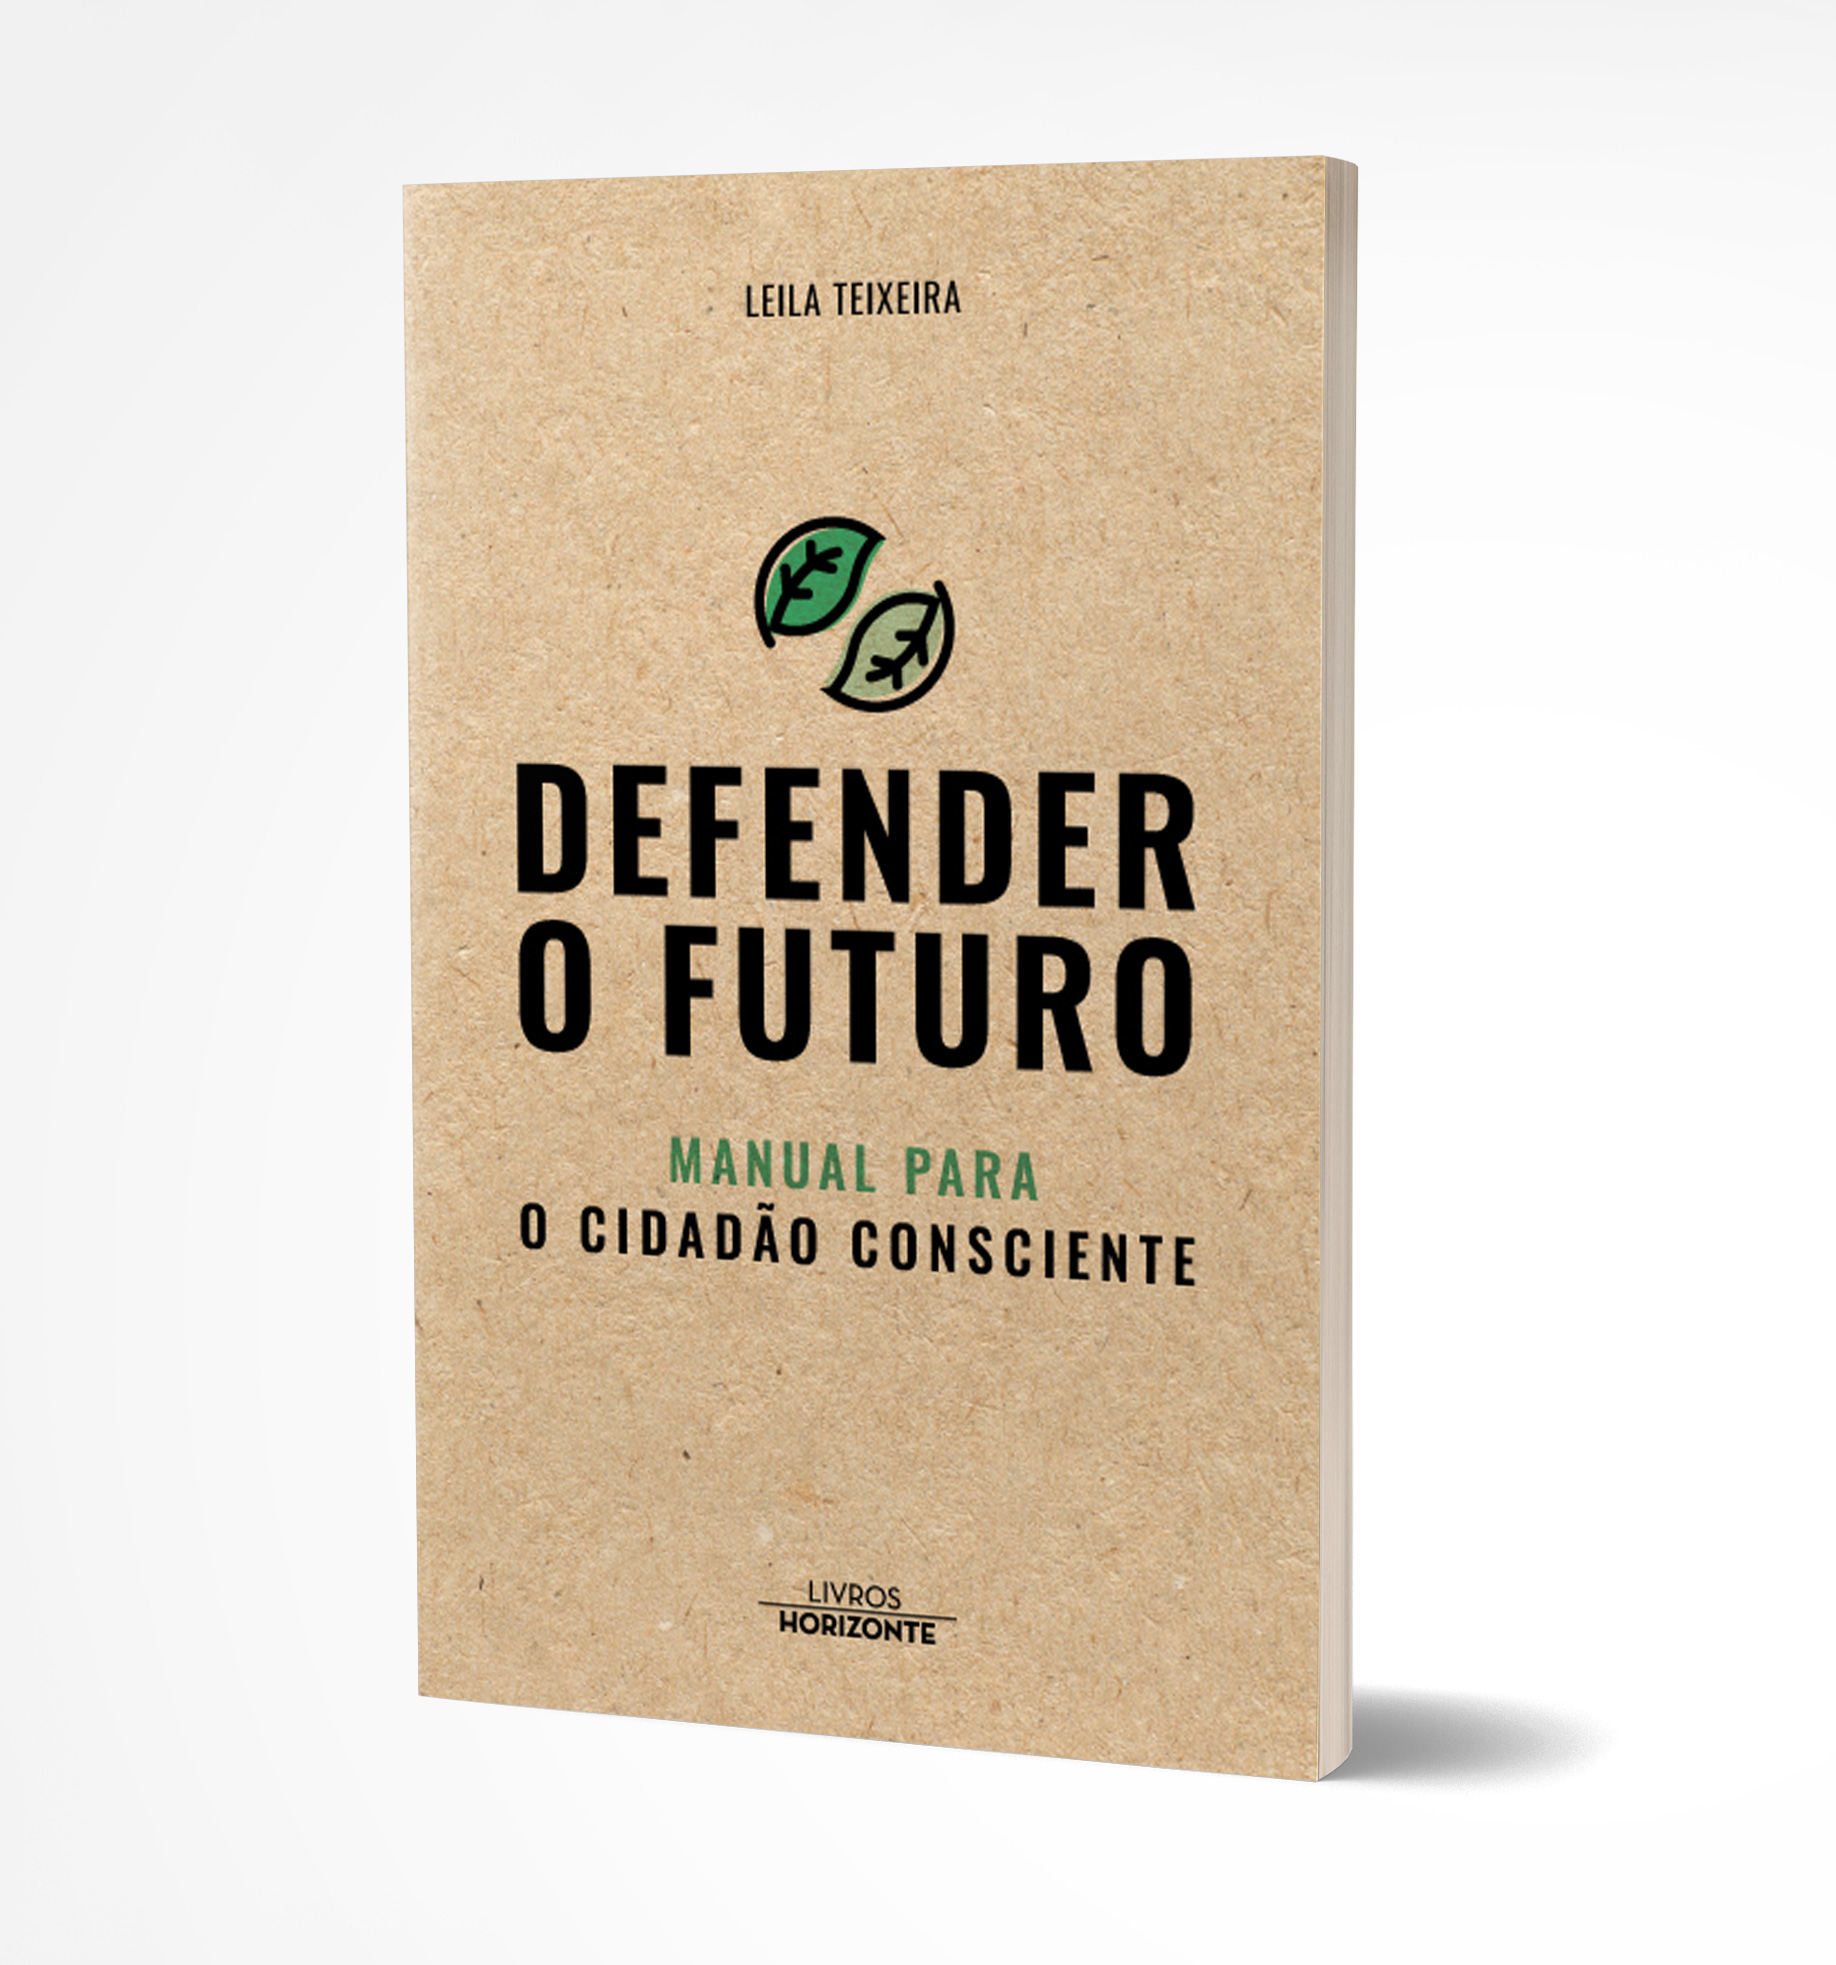 Foto de 'Defender o futuro': o novo livro que alerta para o cidado consciente